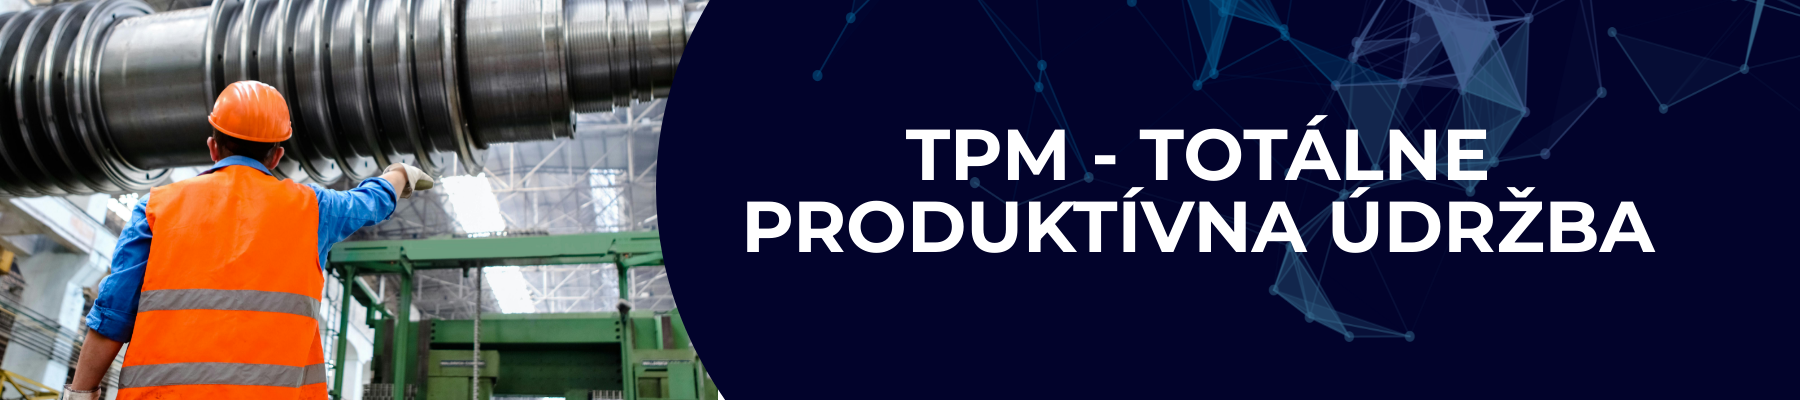 TPM - Totálne produktívna údržba